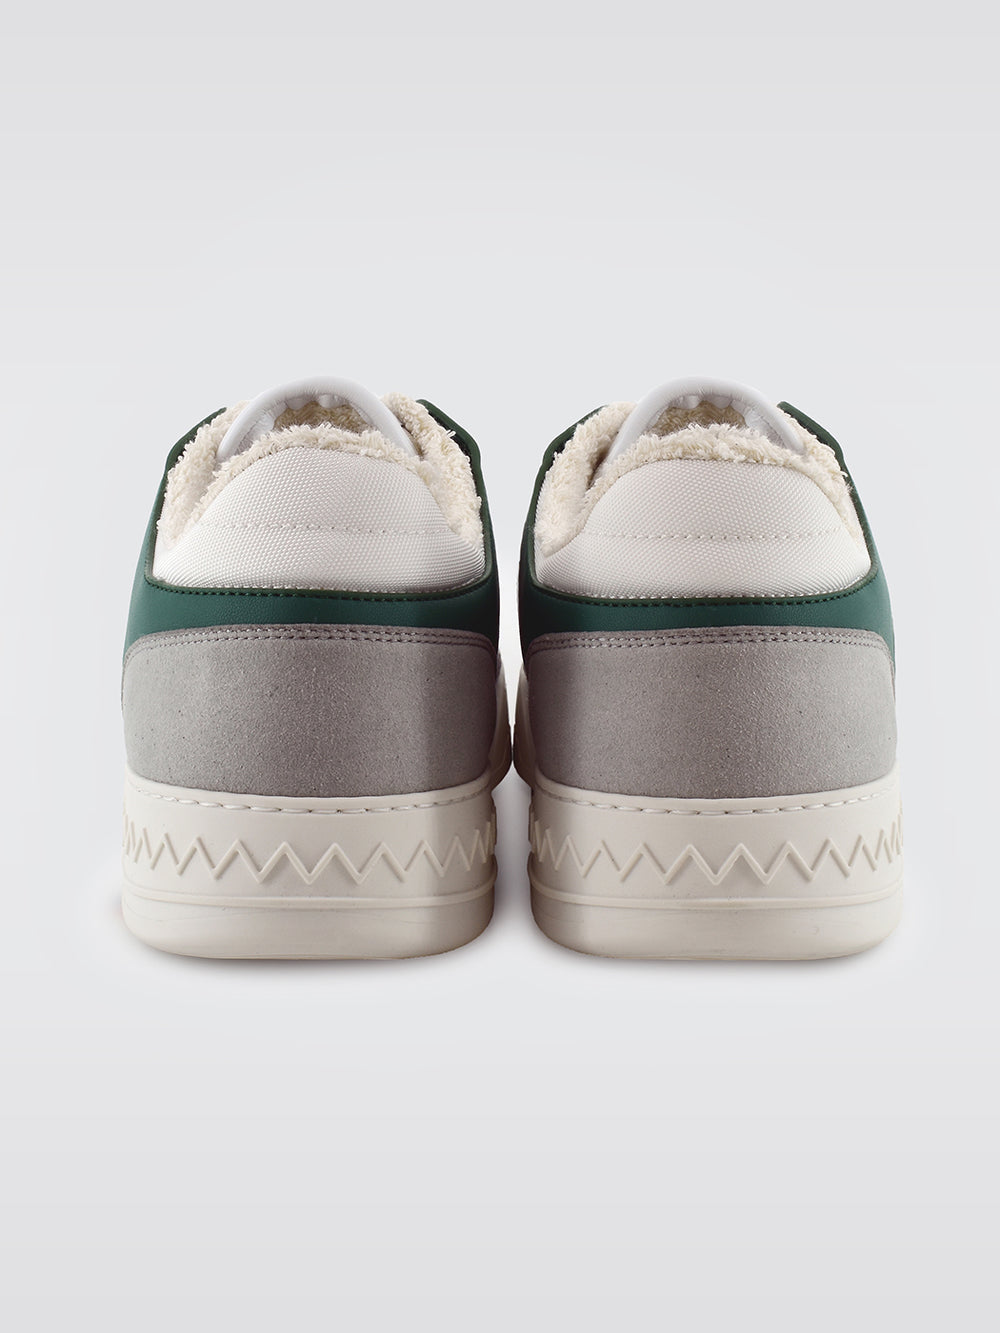 Missoni Basket 90' Stripes Low - White/Green